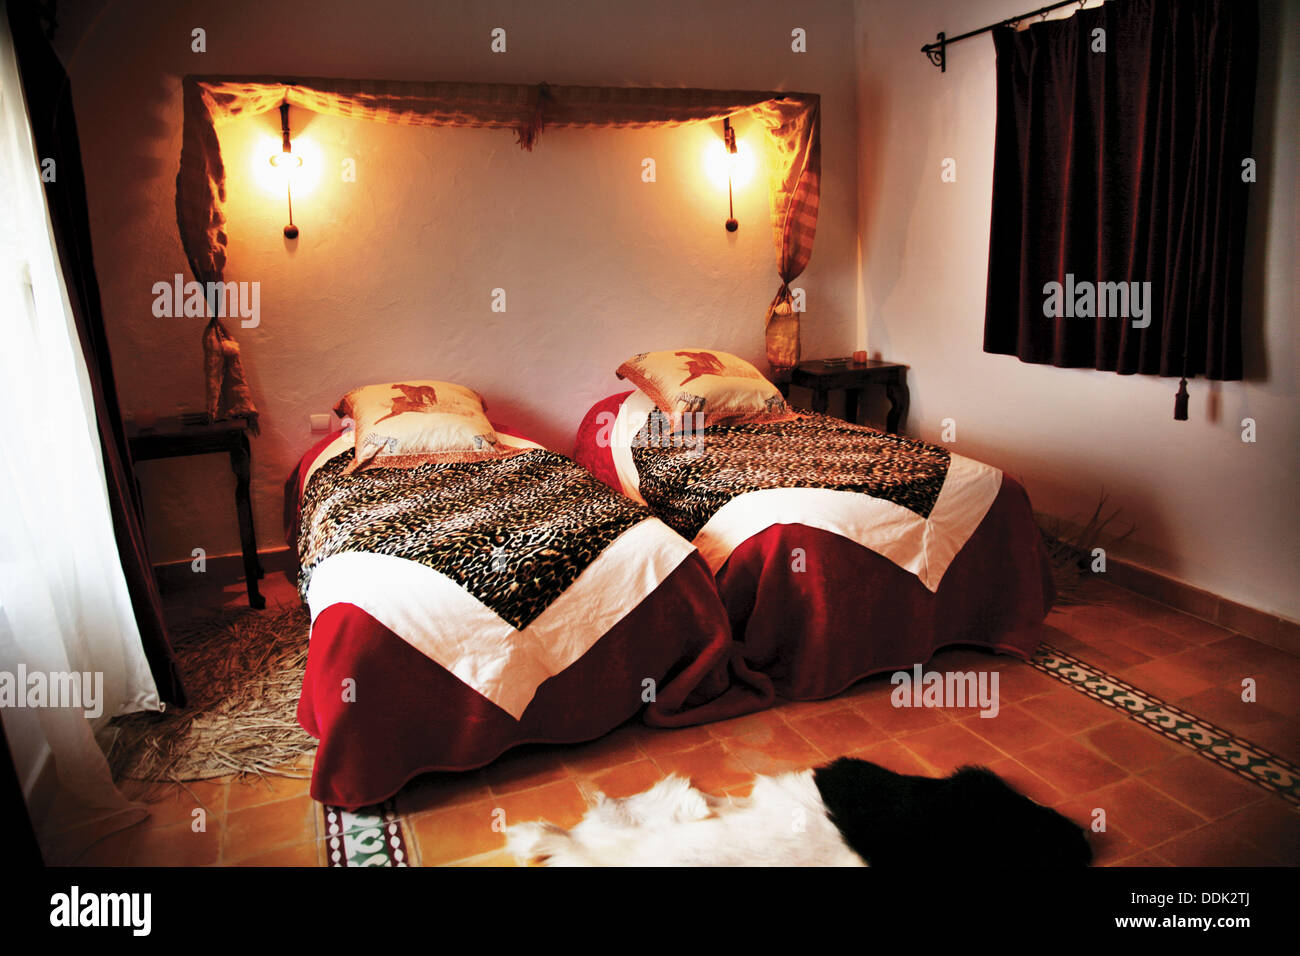 Dar said hotel Banque de photographies et d'images à haute résolution -  Page 6 - Alamy